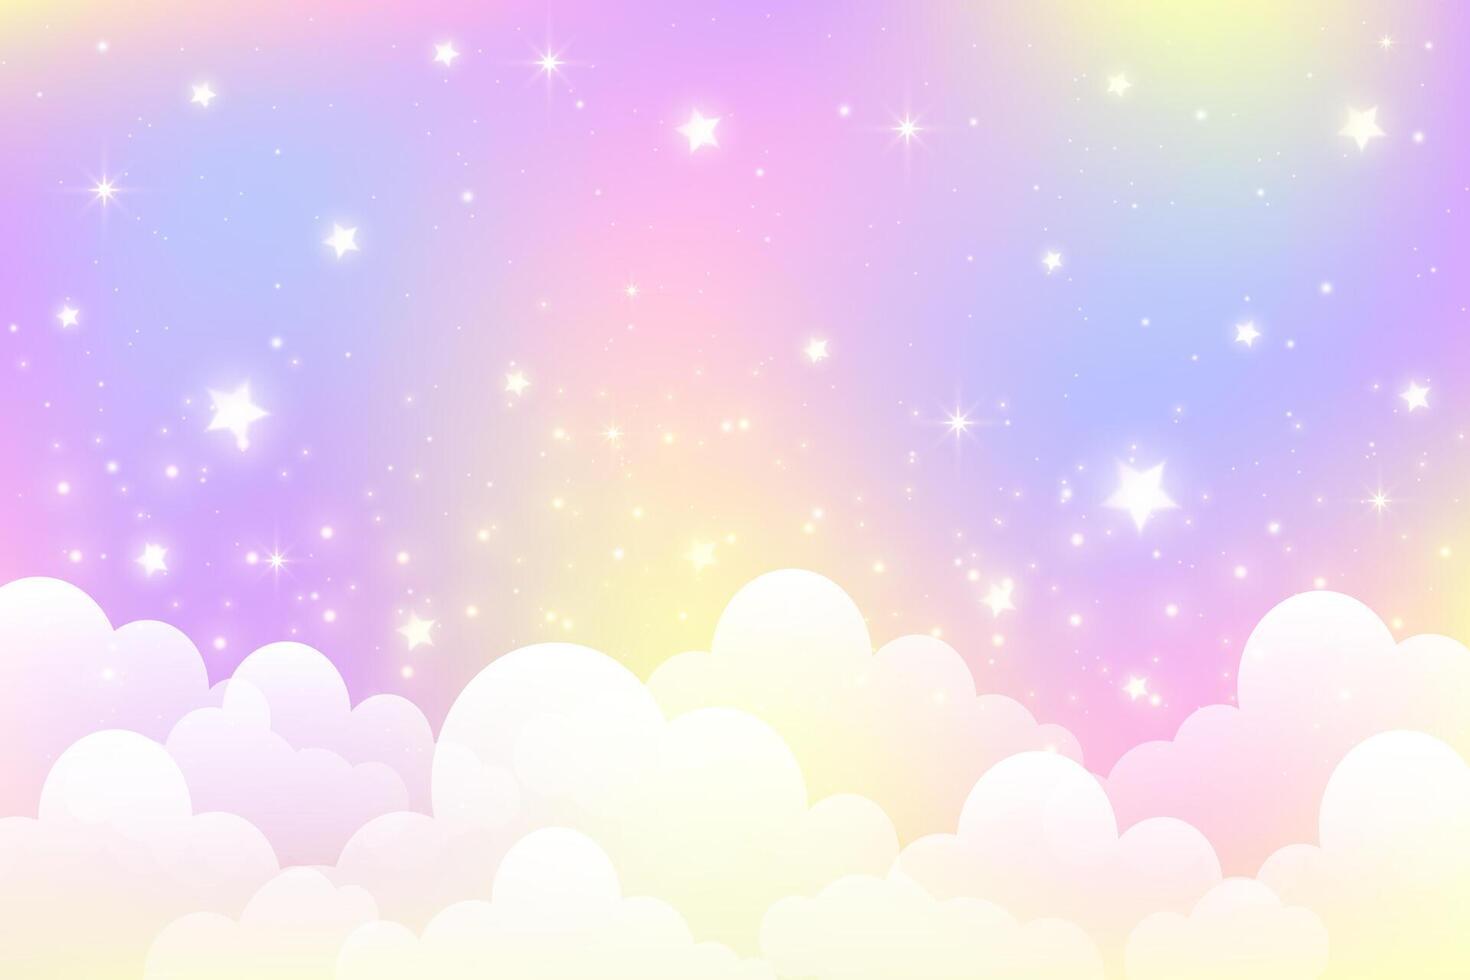 söt enhörning färgad himmel med stjärnor och moln. regnbåge pastell bakgrund. abstrakt lutning landskap med lutning och gnistrar. magi holografiska galax. vektor